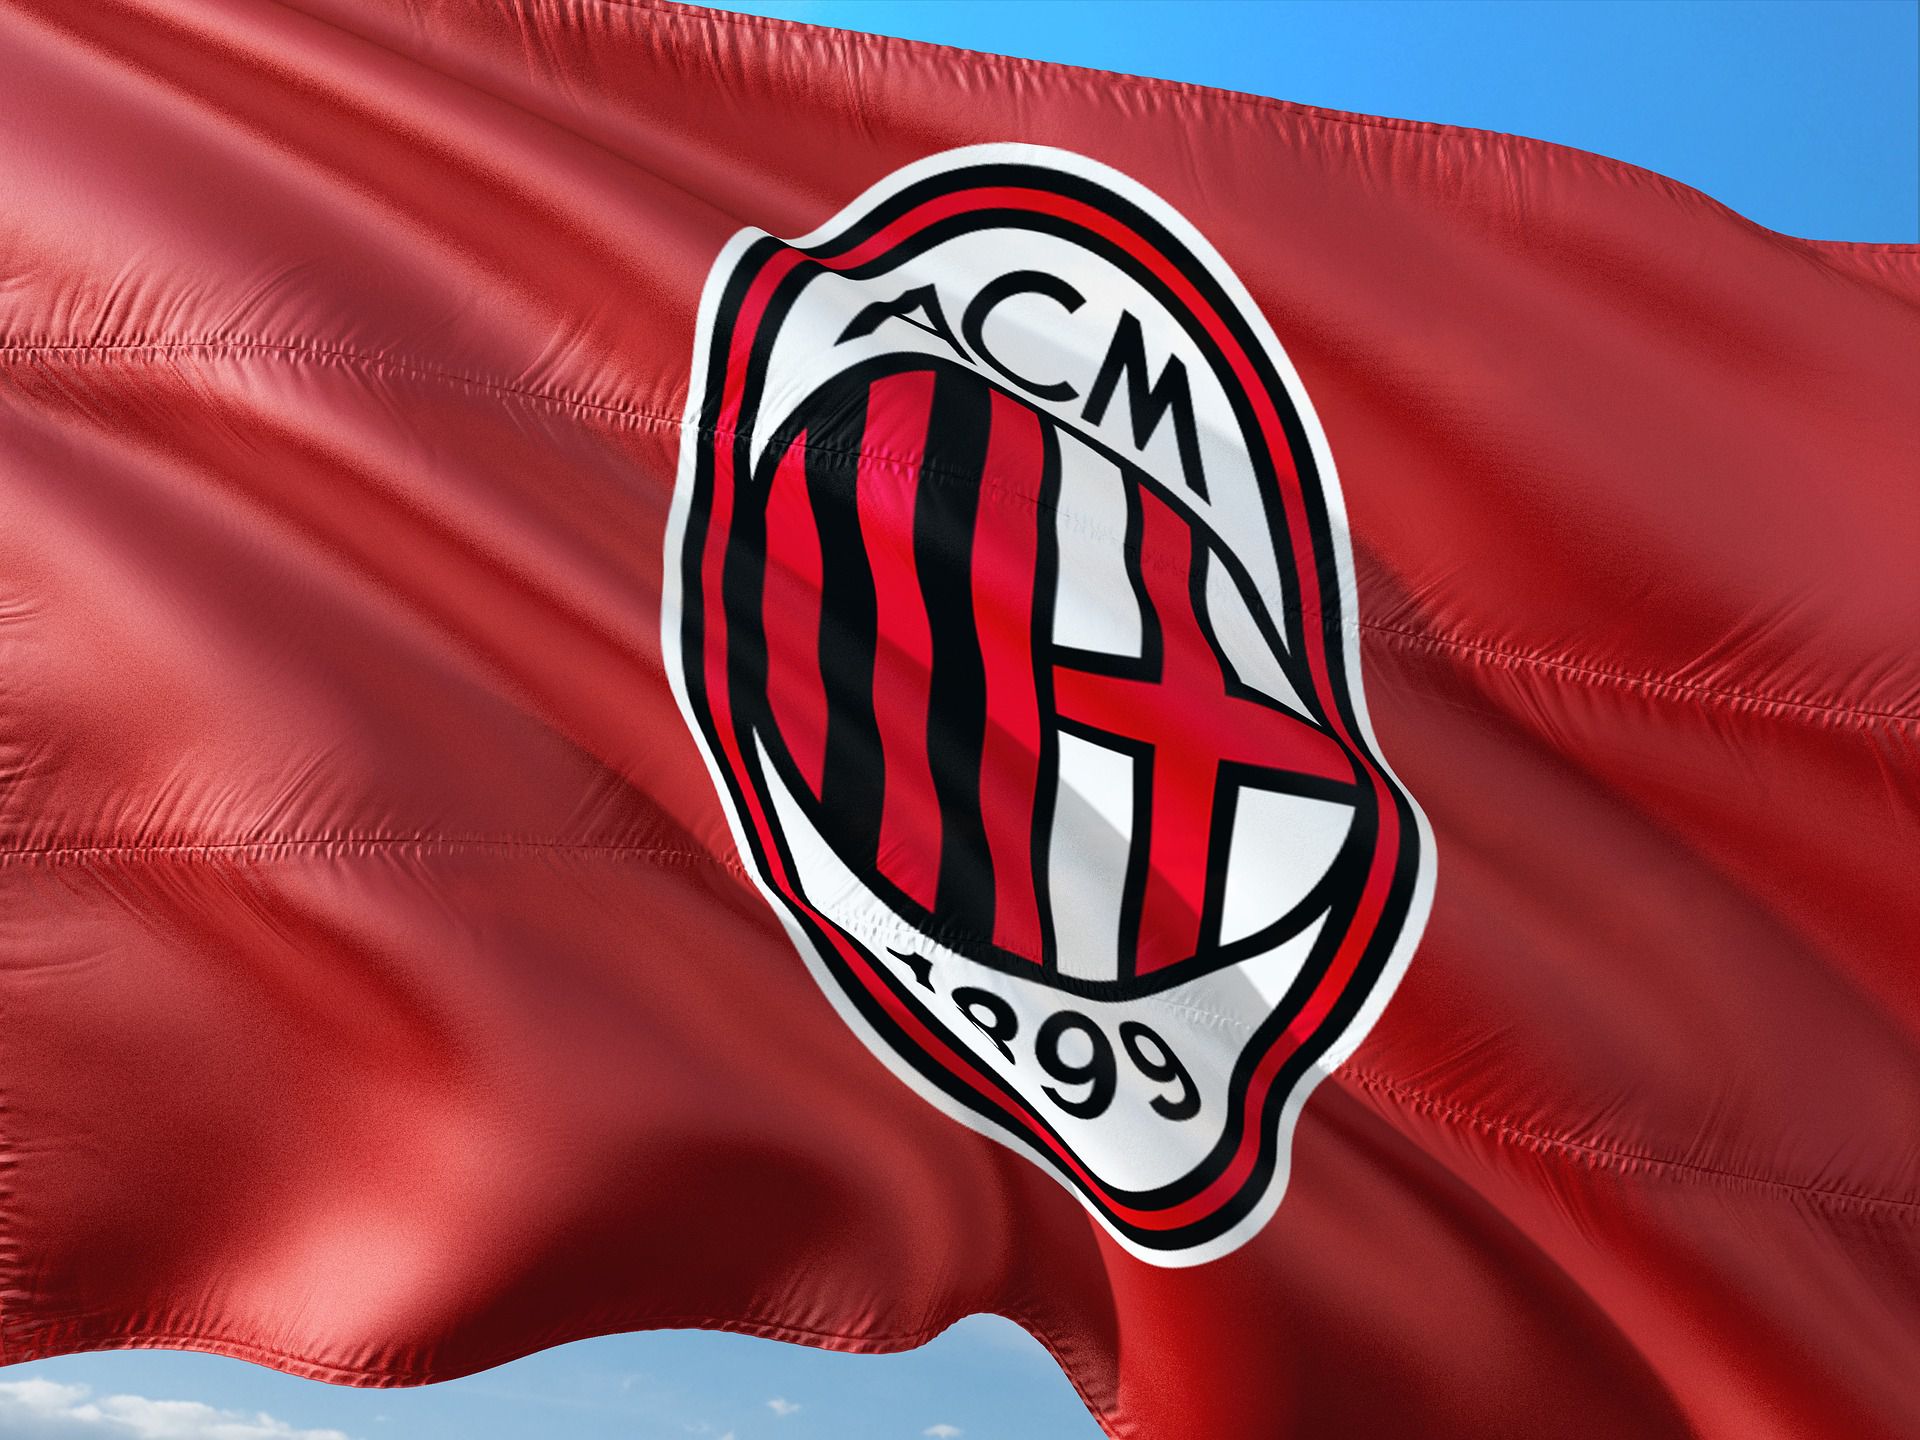 Kerkez Milos két gólt szerzett az AC Milannak / Fotó: Pixabay